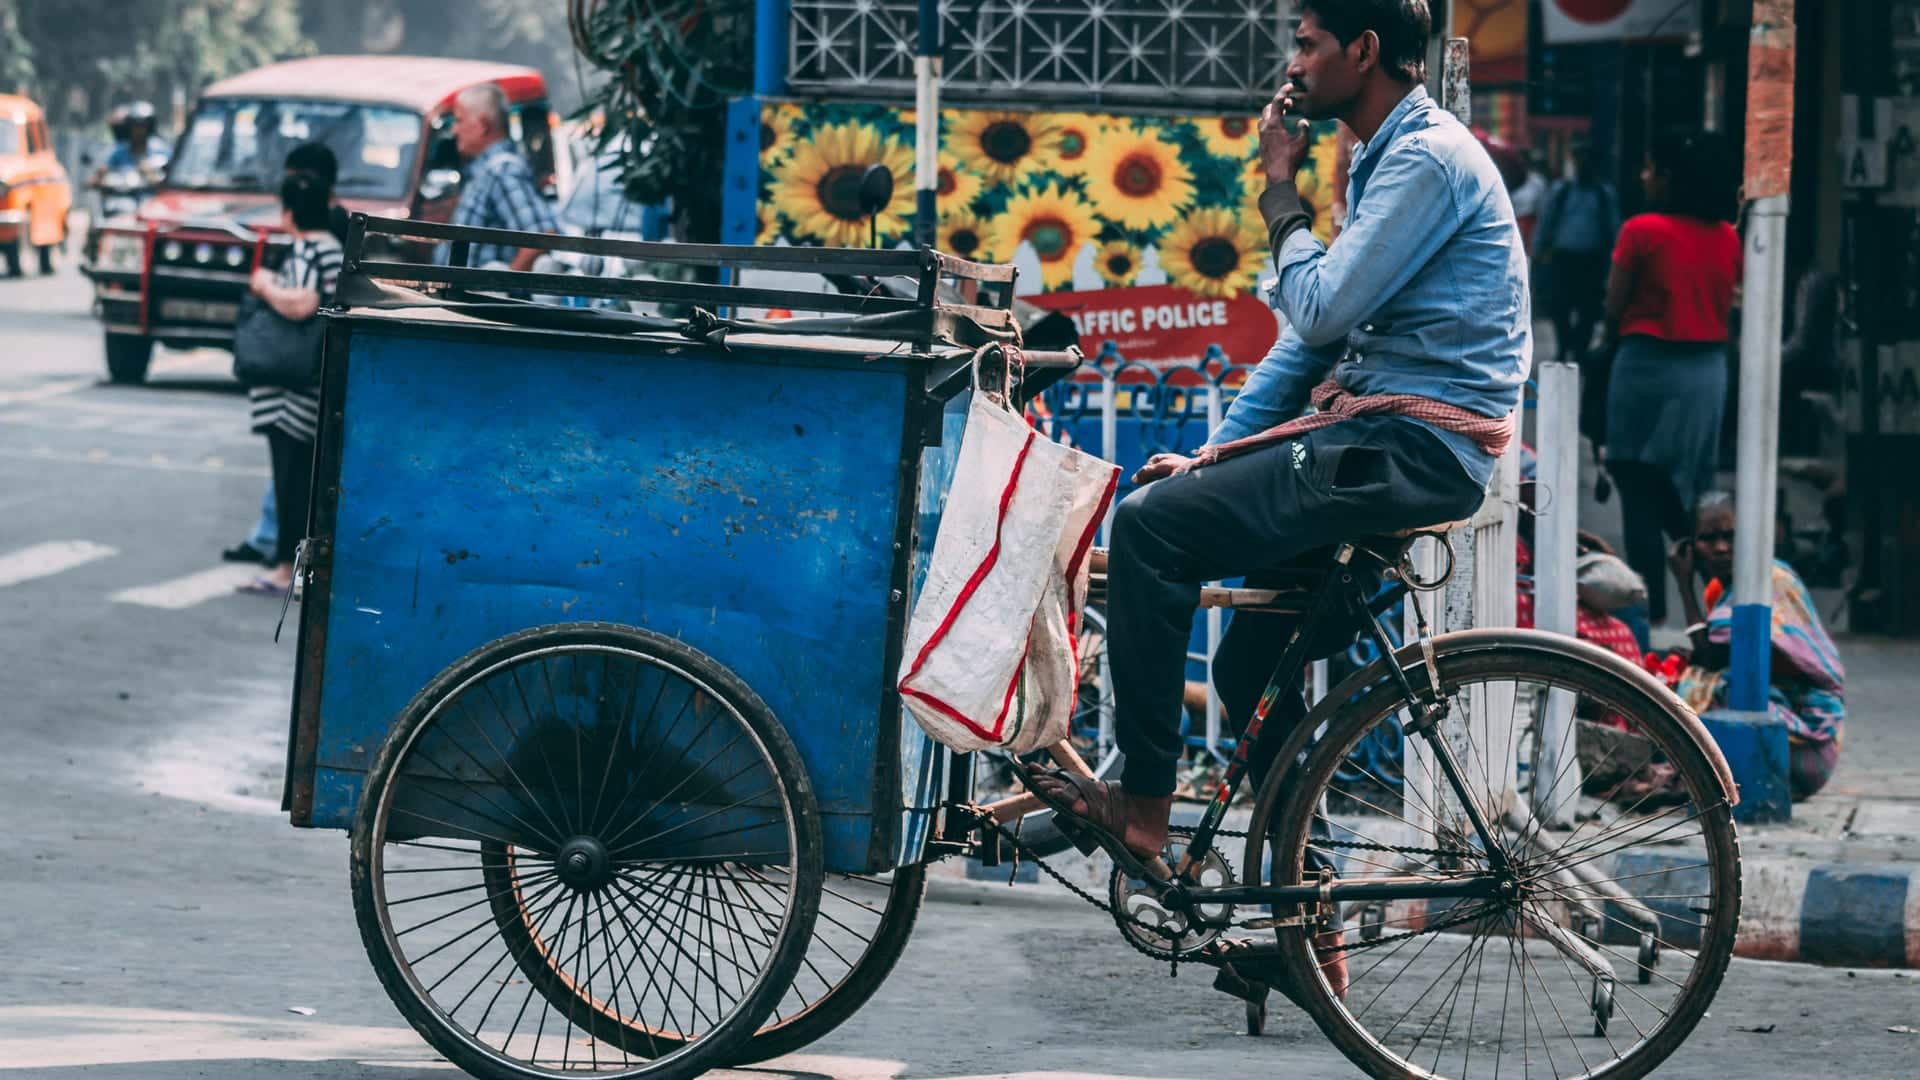 An Indian street vendor